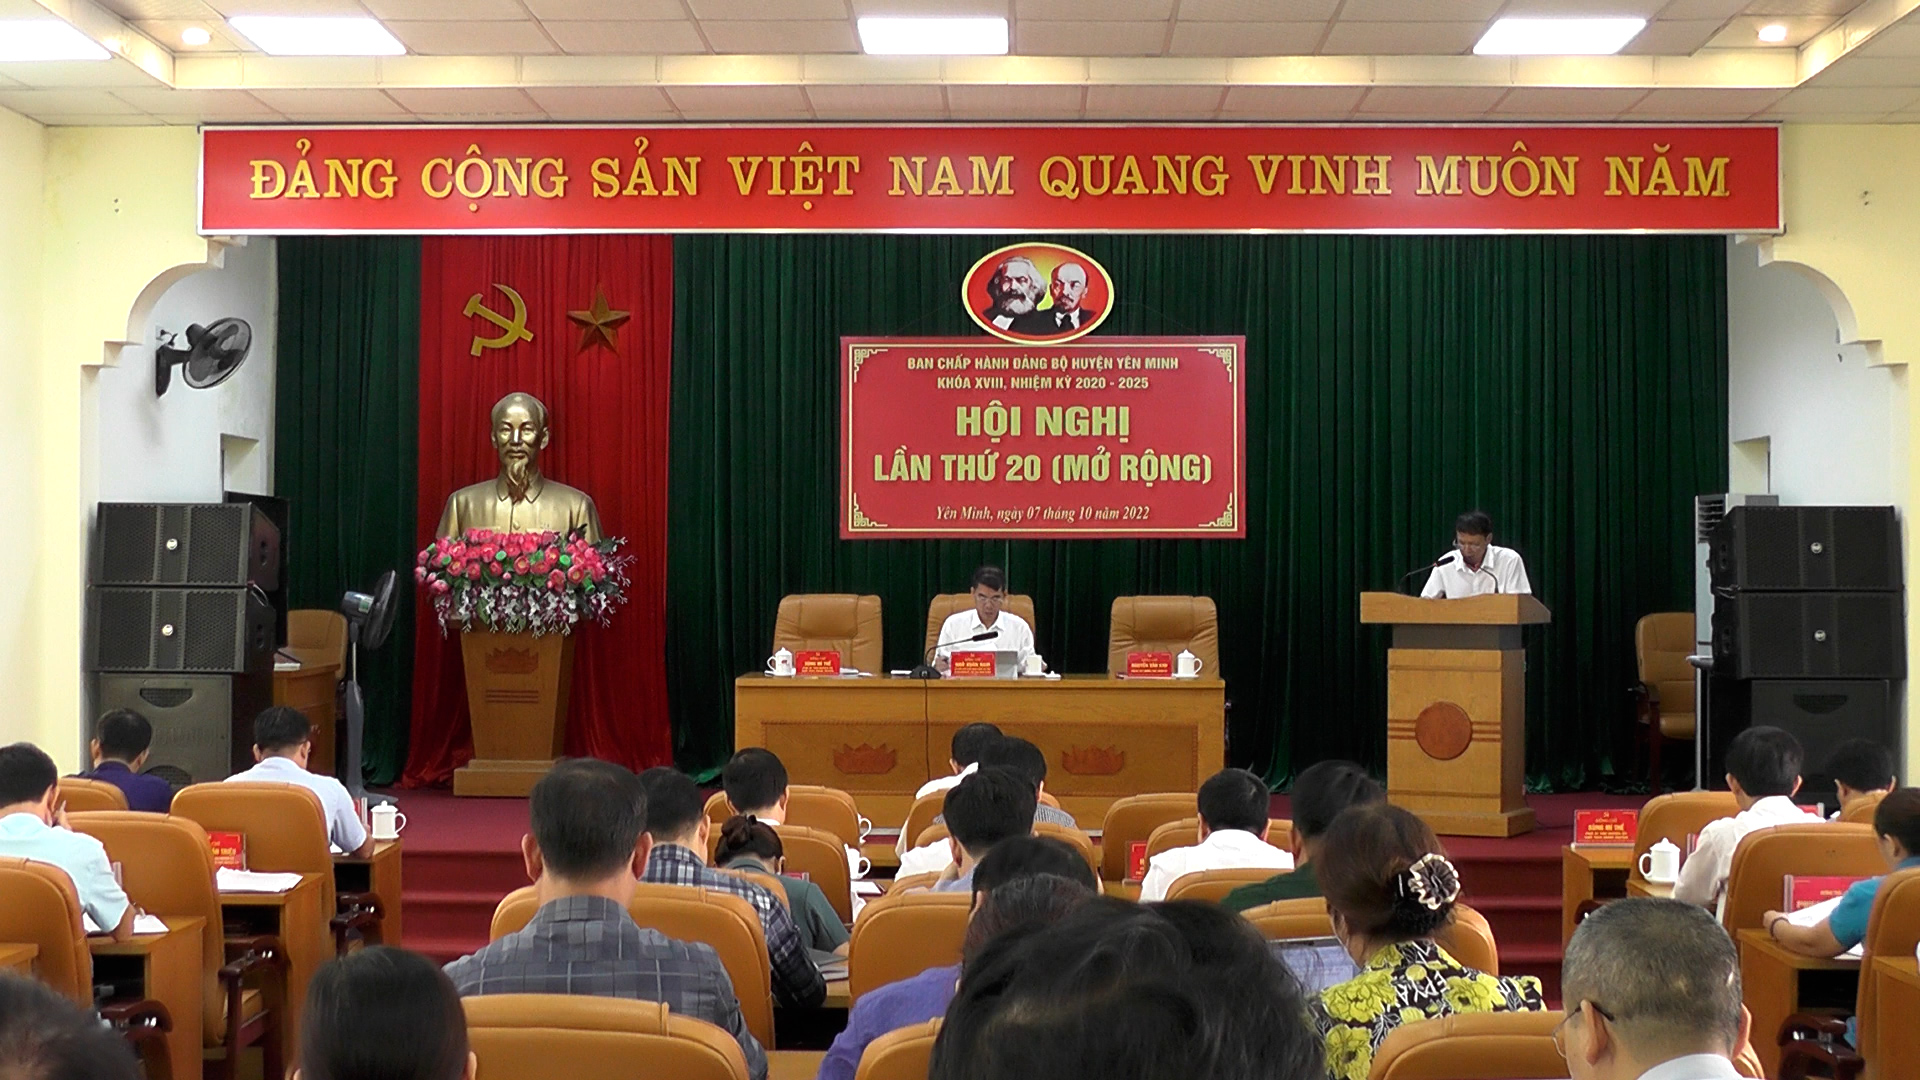 Hội nghị Ban Chấp hành Đảng bộ huyện Yên Minh lần thứ 20, khóa XVIII